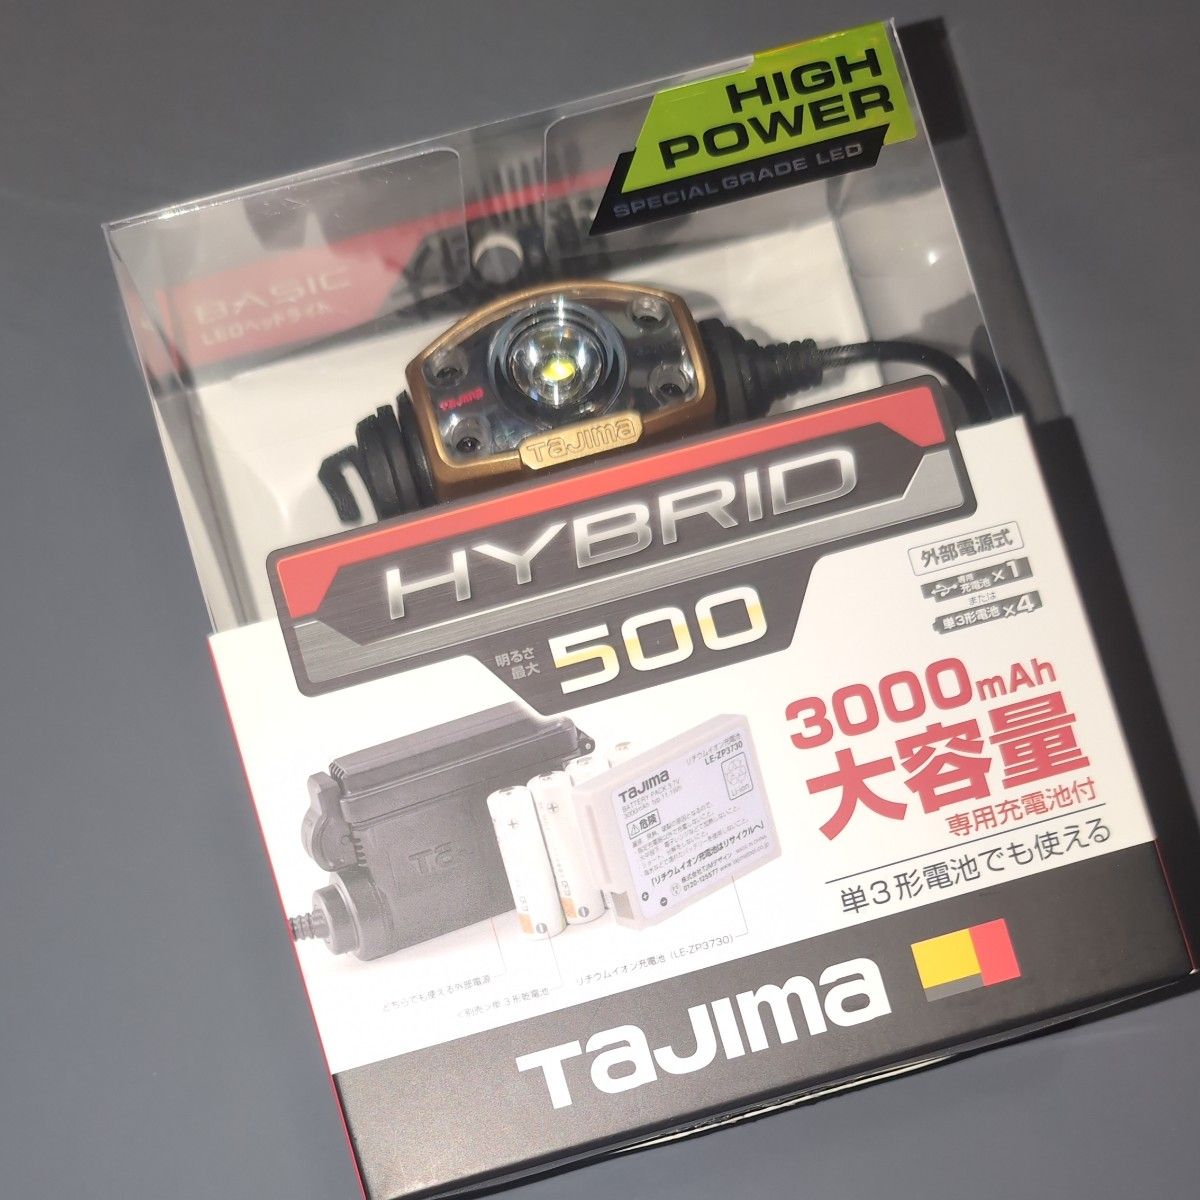 タジマ (Tajima) LEDヘッドライト E501D セット